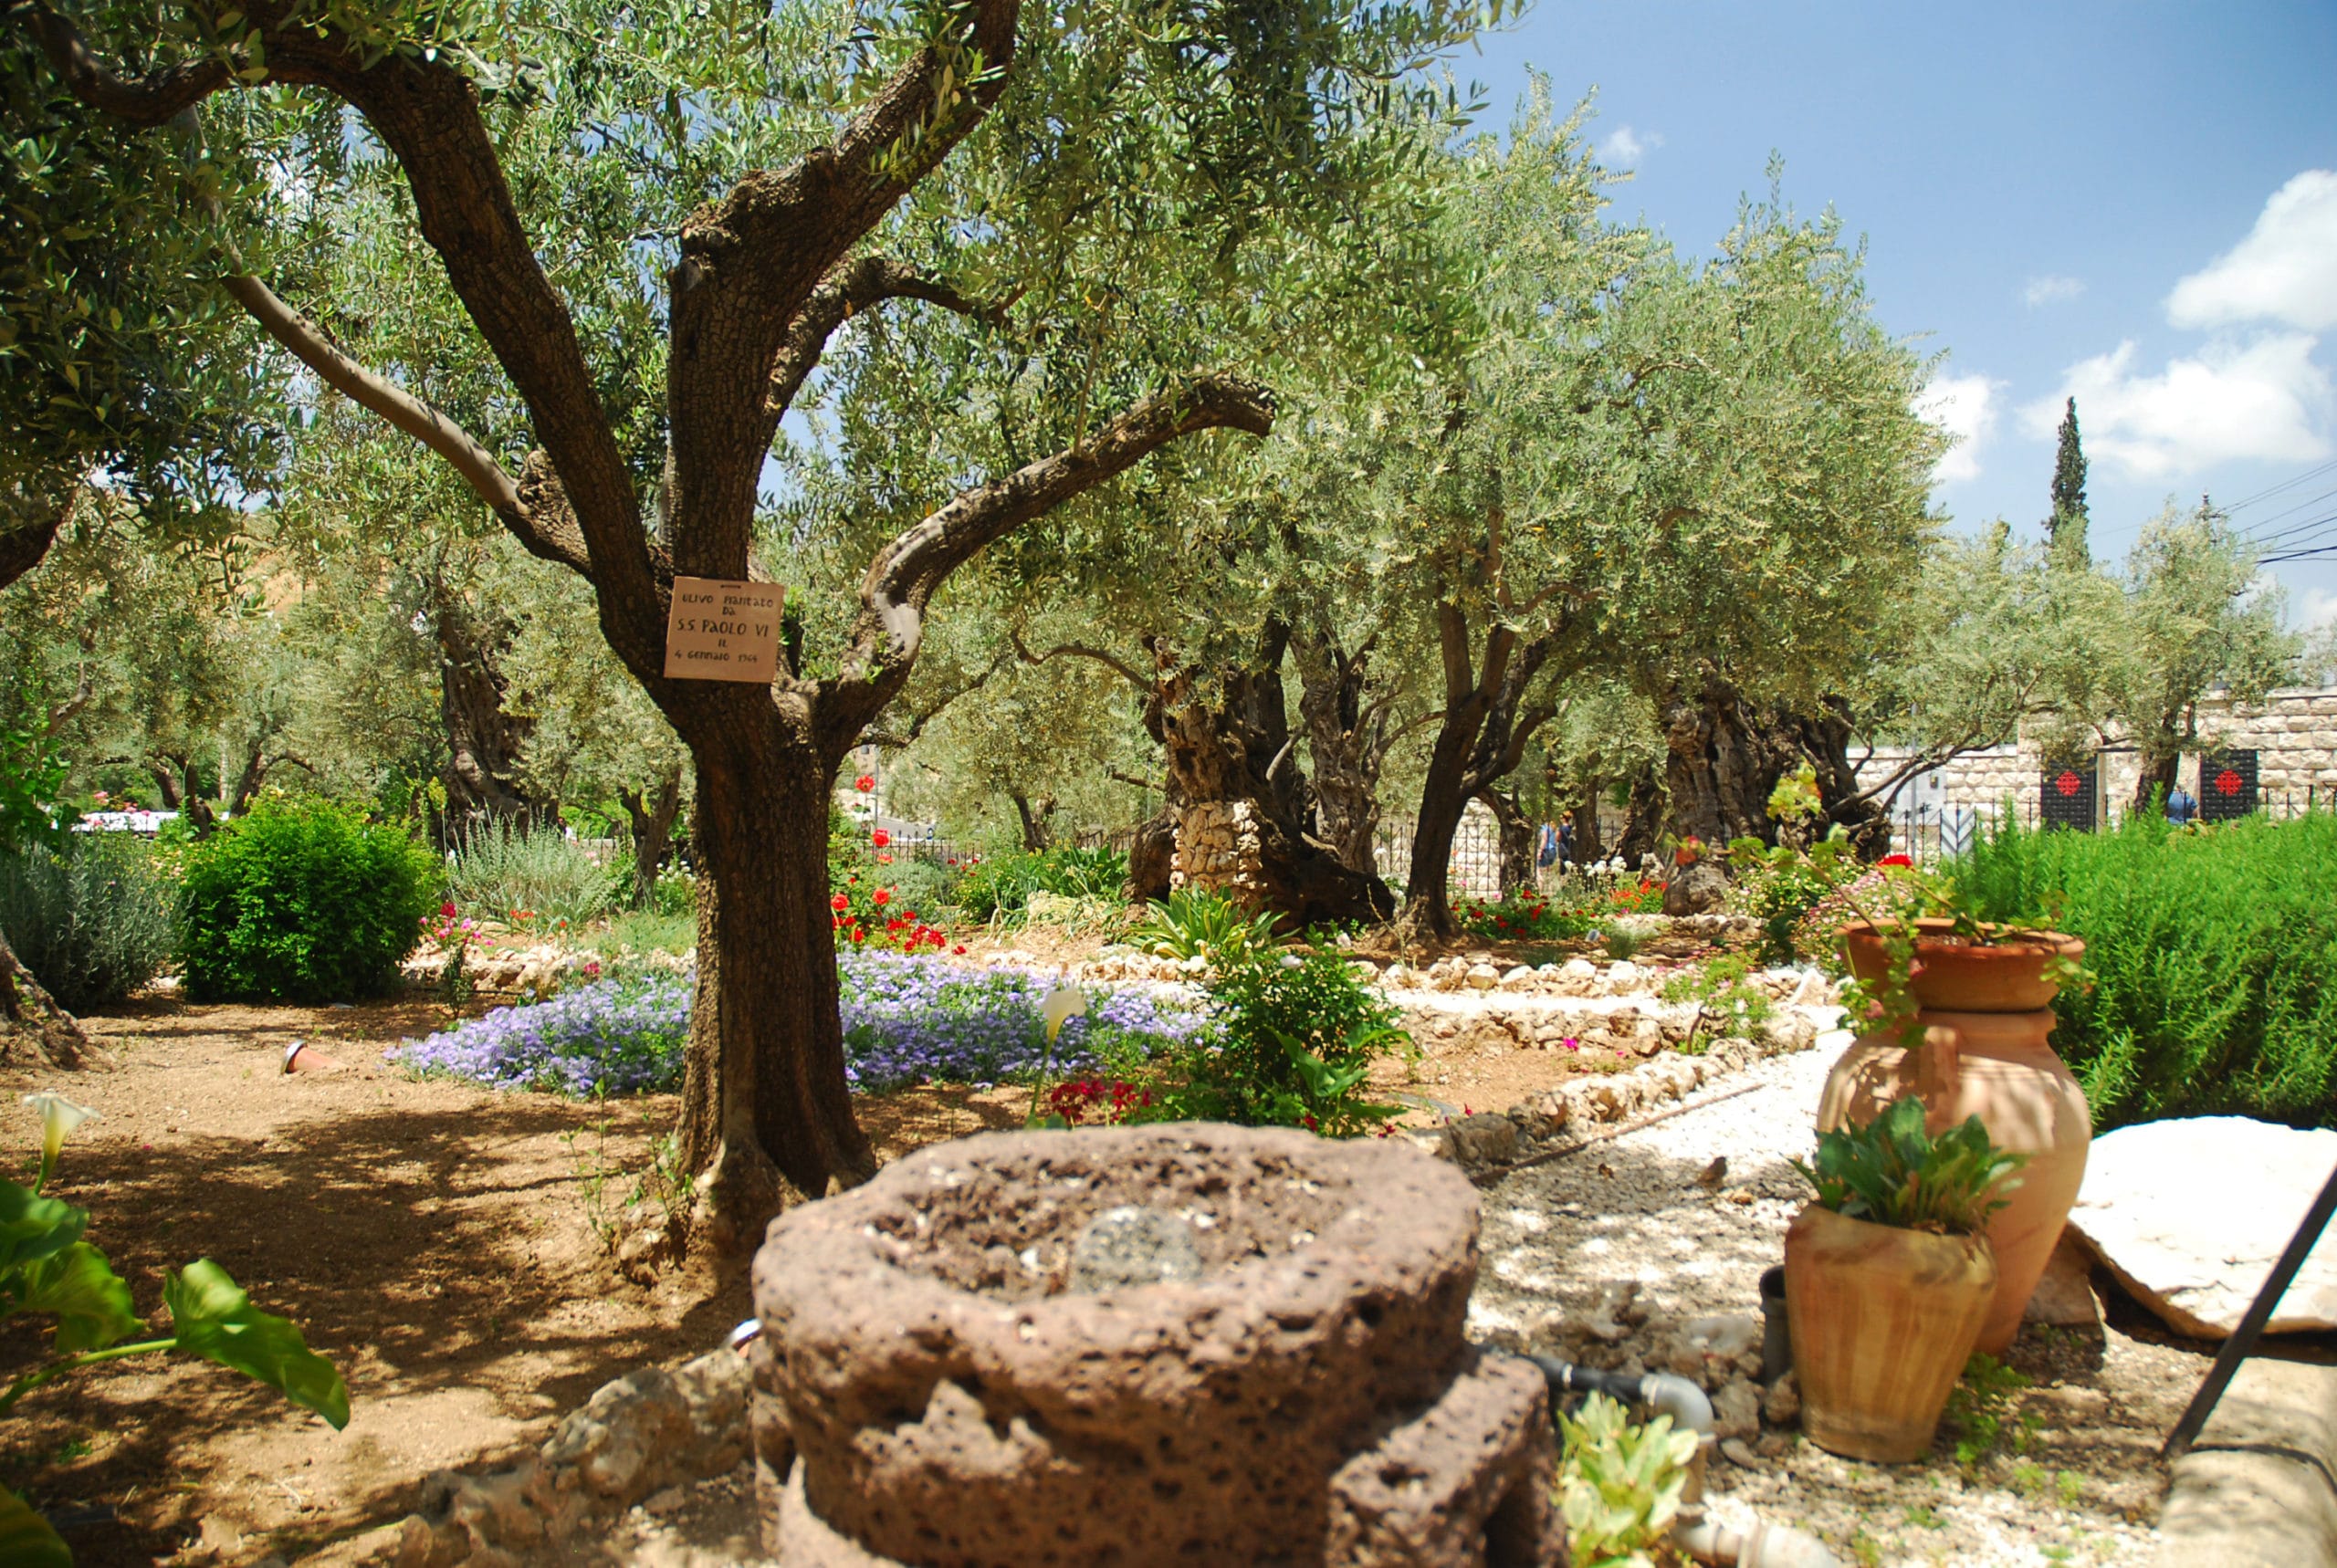 Garden of Gethsemane, Jerusalem